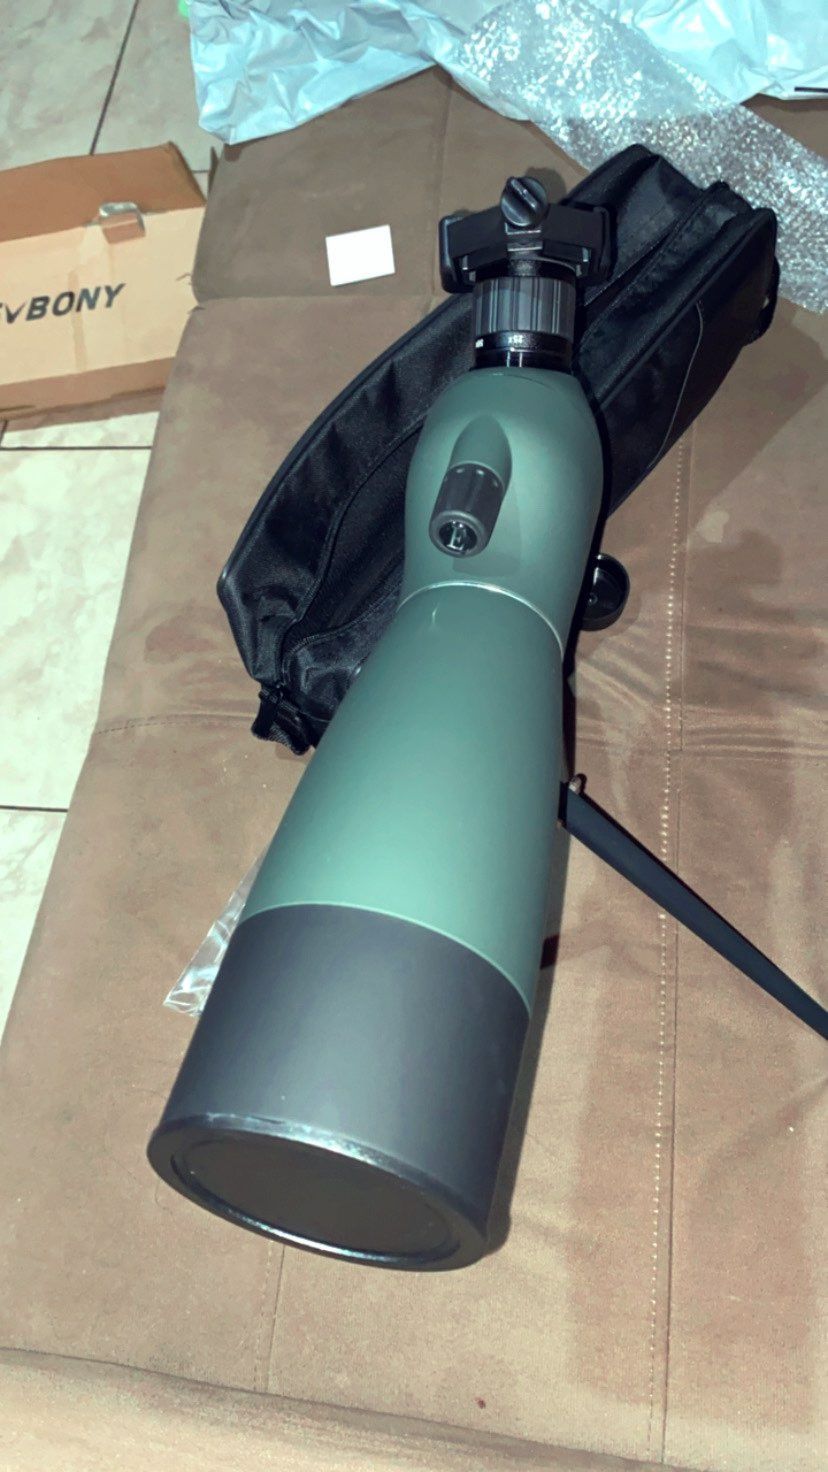 Підзорна труба телескоп монокуляр svbony sv 28